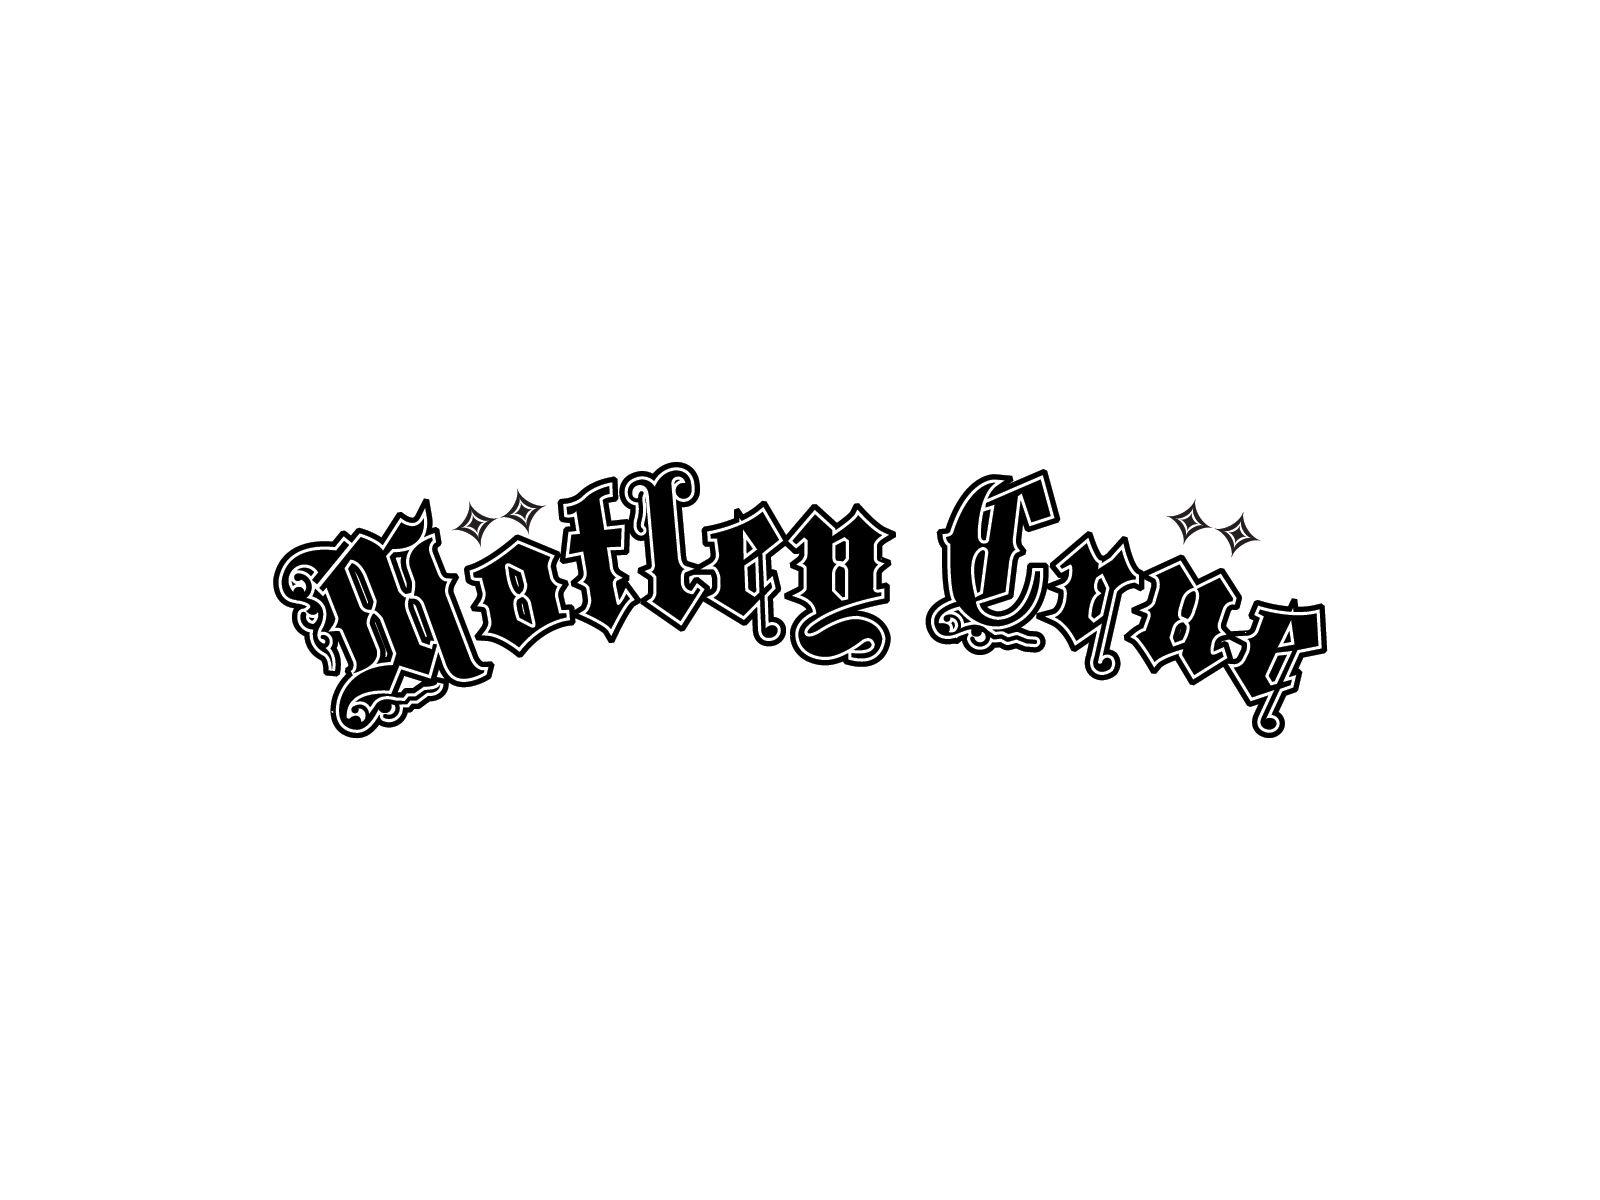 Motley Crue logo and wallpaper. Rock band logos, Band